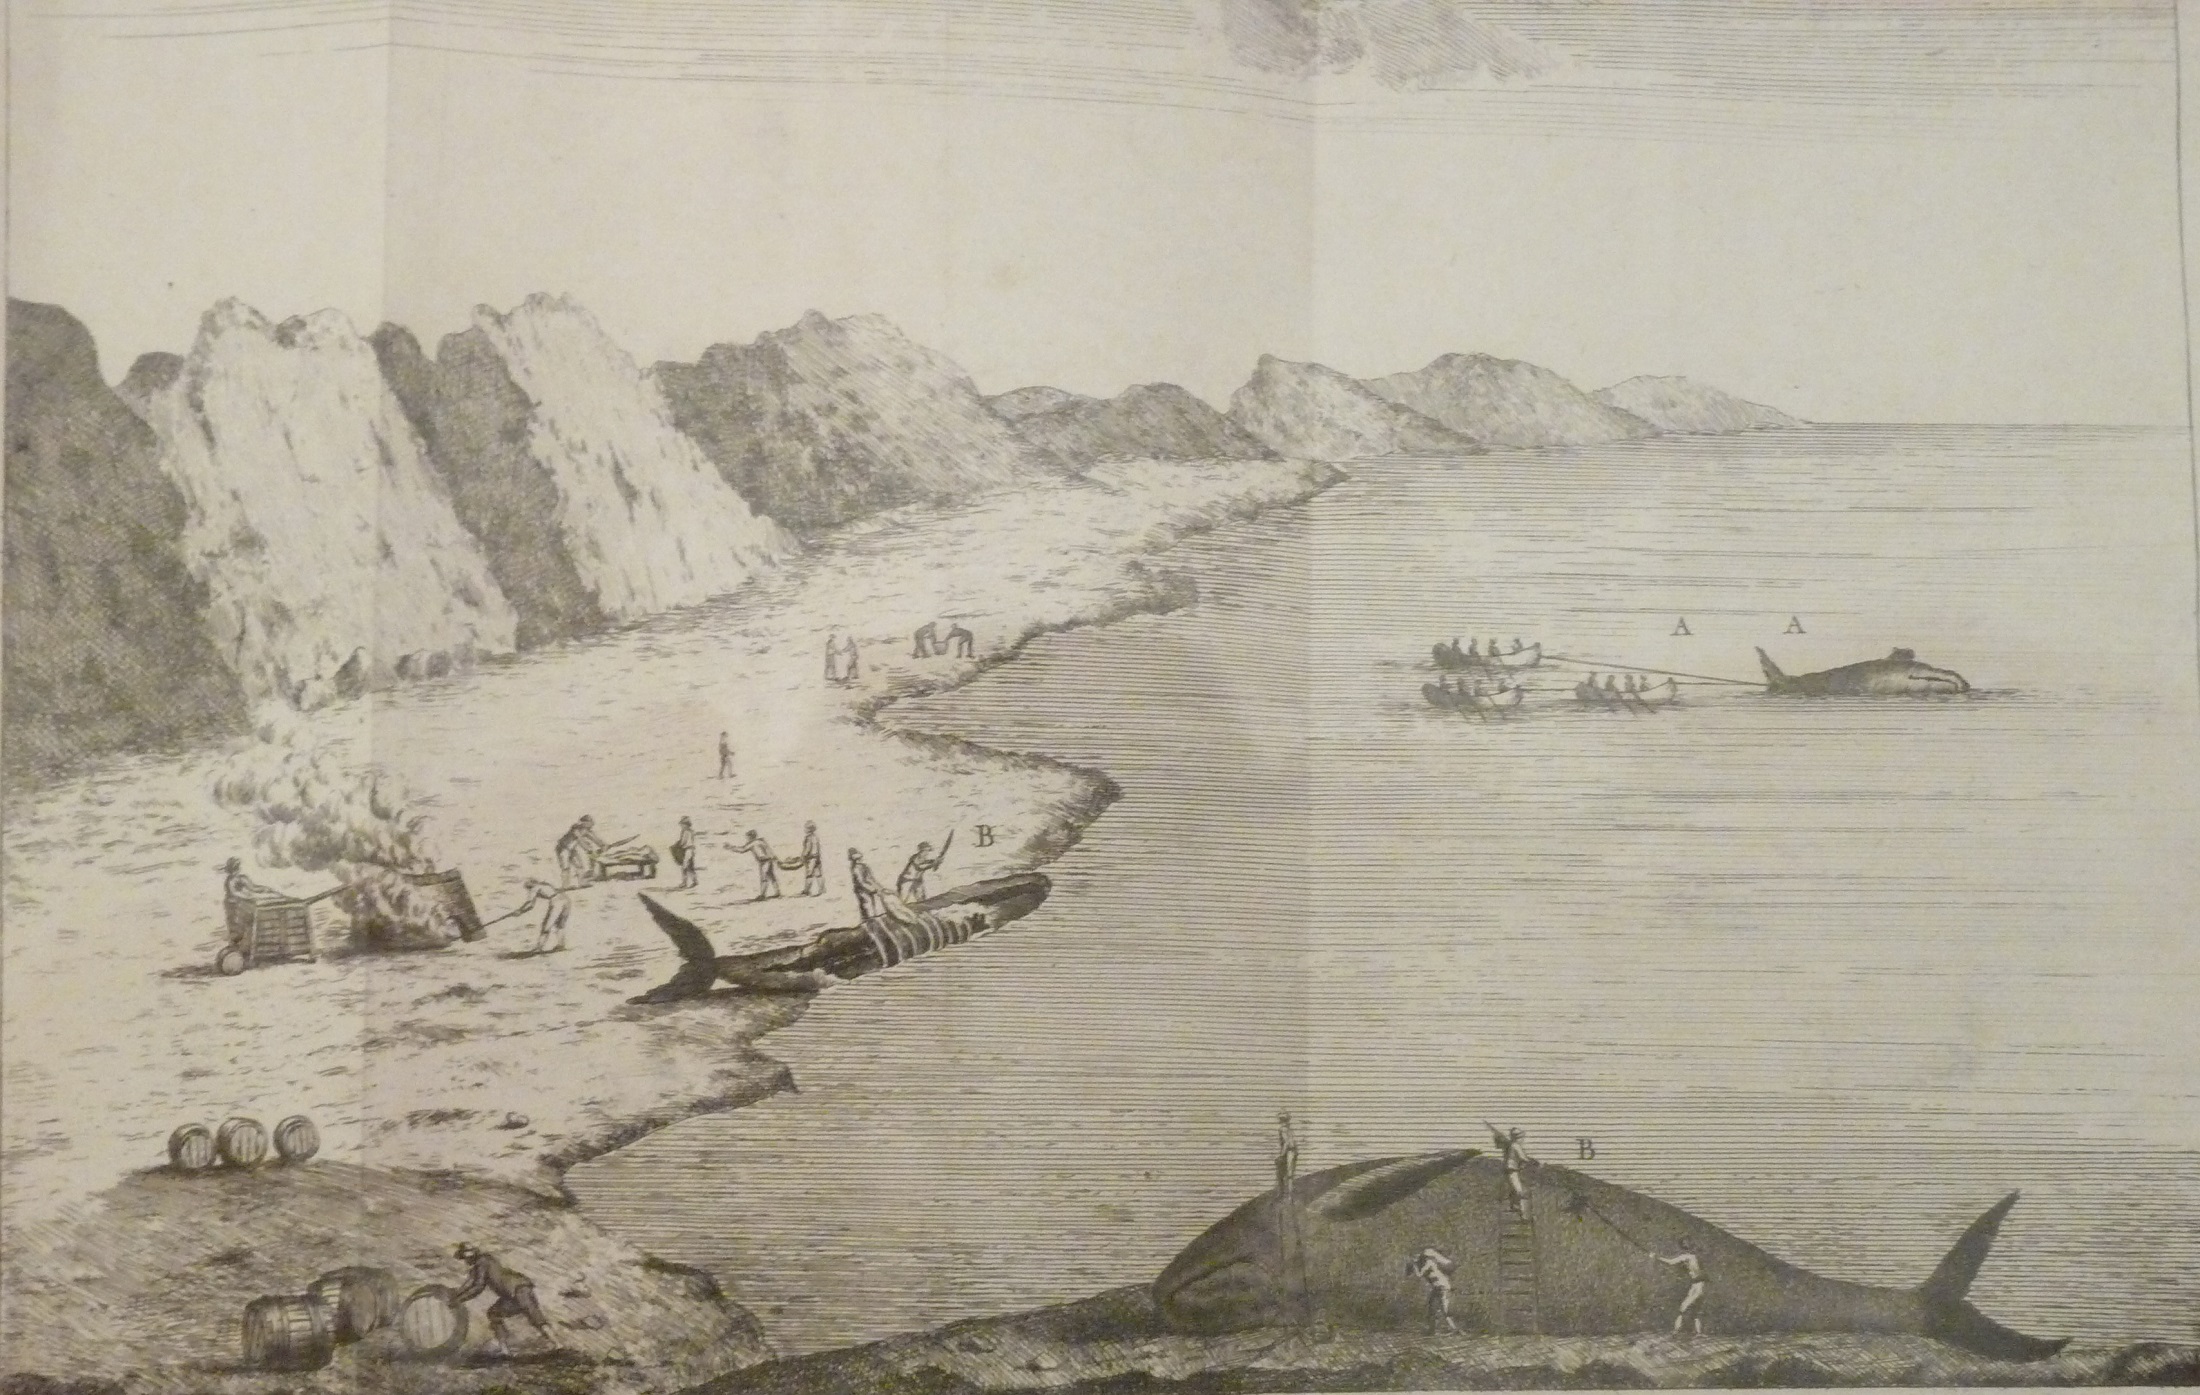 Foto 3: Dibujo copiado del museo Massó en Bueu Península do Morrazo. En él puede verse cómo varaban las ballenas, las cortaban en pedazos que derretían en calderas para obtener el saín, que posteriormente guardan en barriles para su almacenaje y transporte